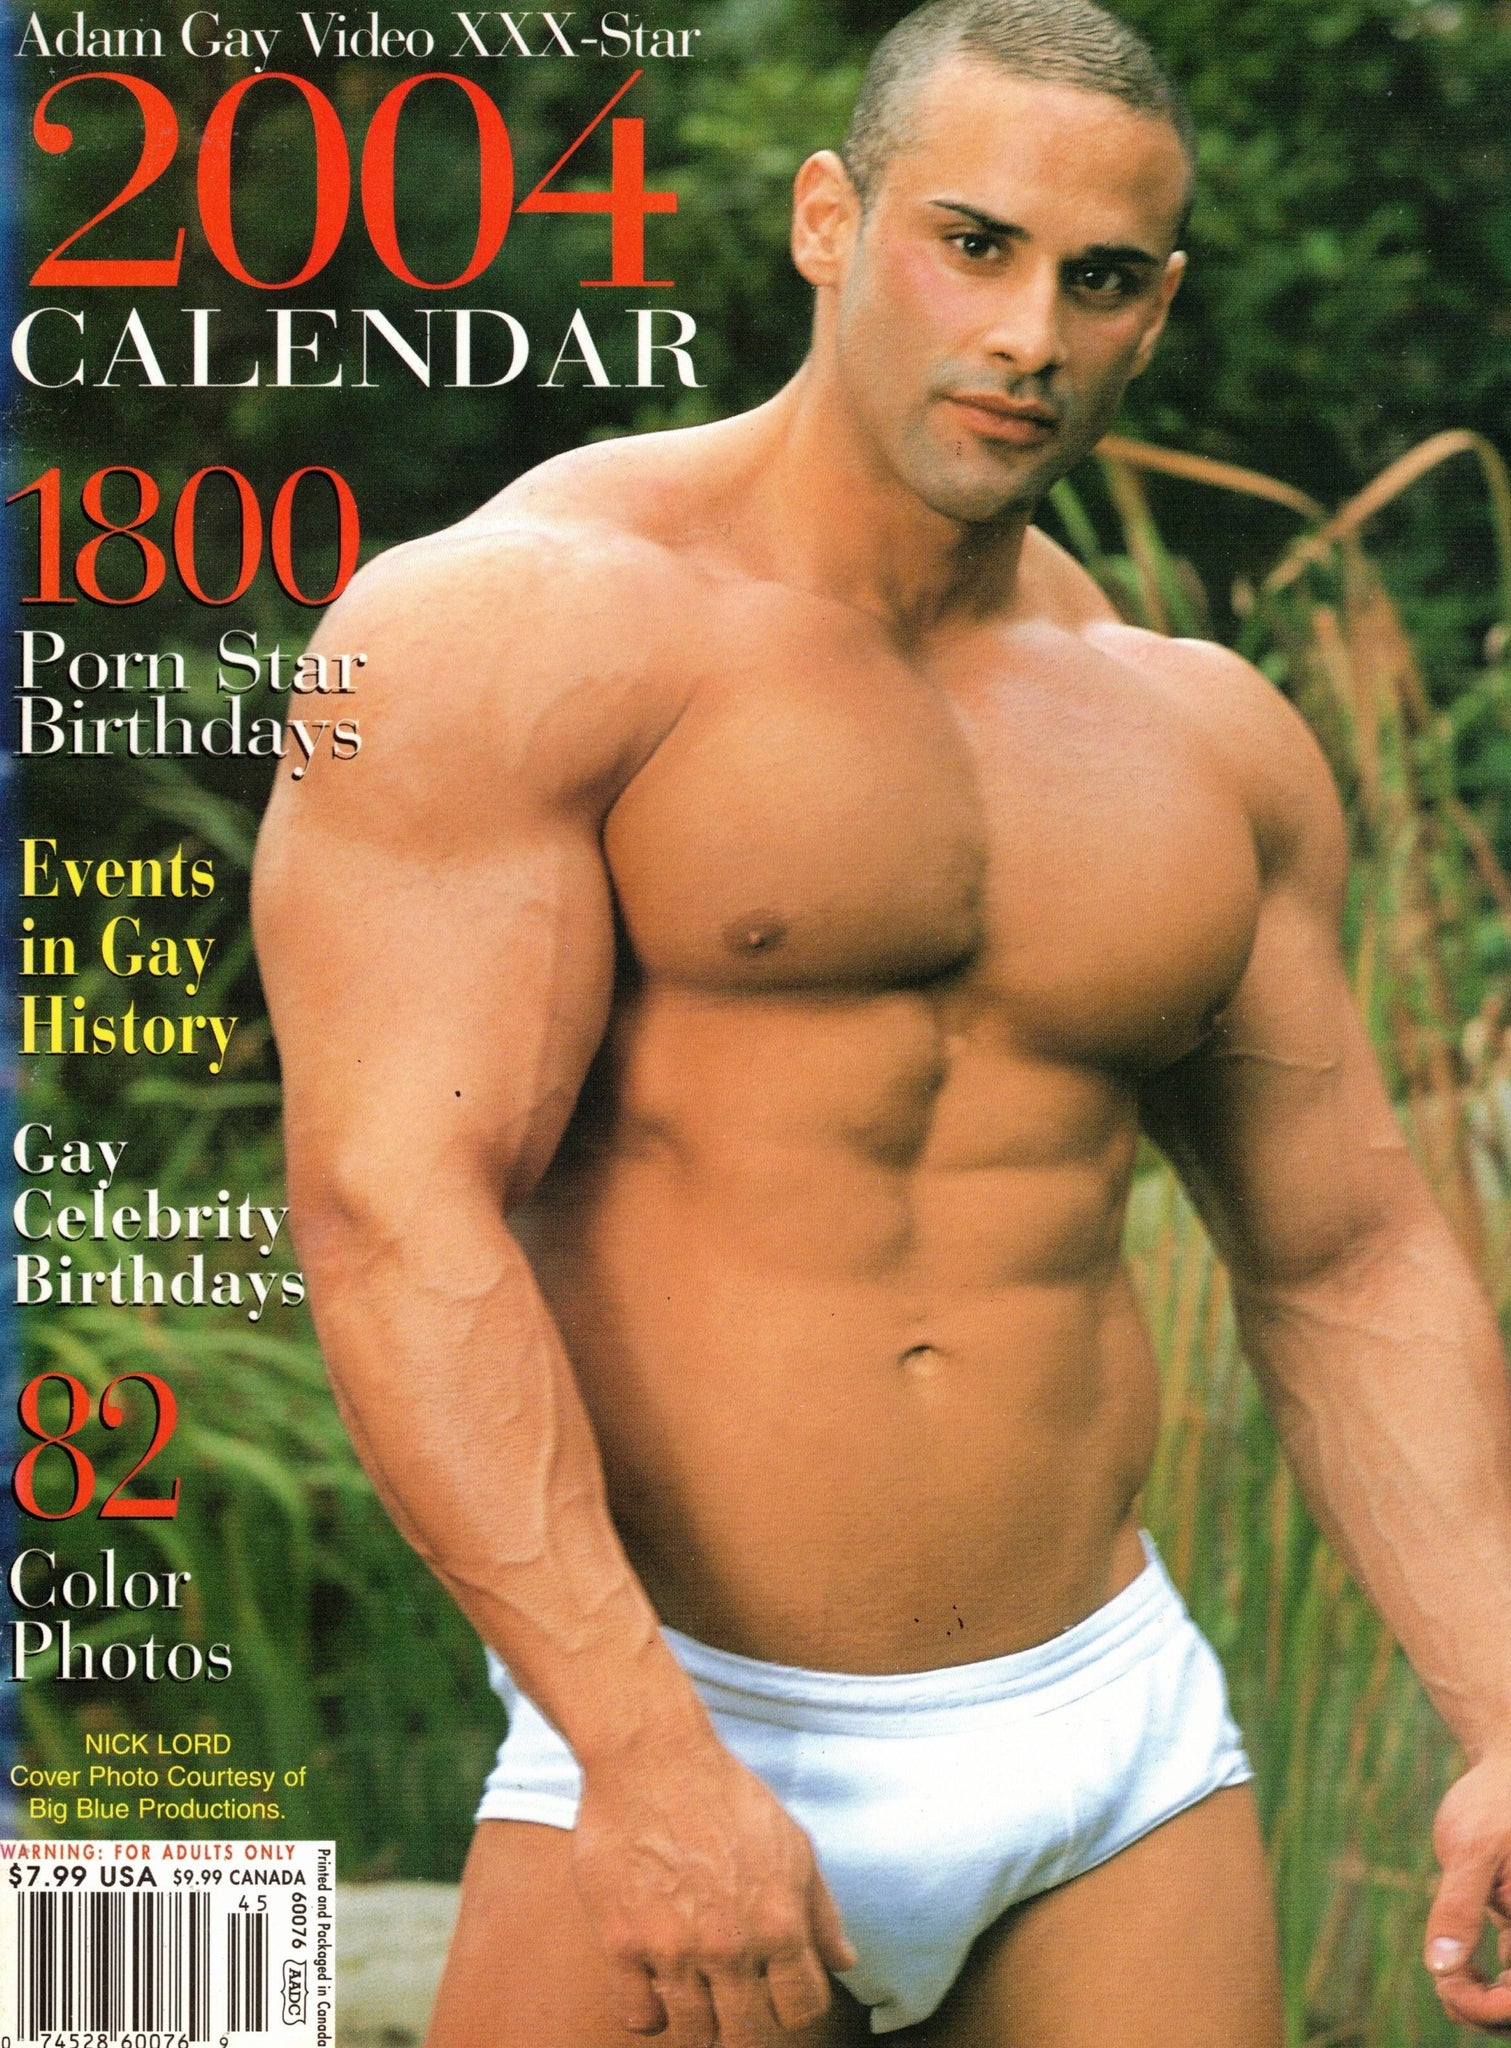 Calendar / Adam Gay Video XXX-Star 2004 / Michael Lucas / Nick